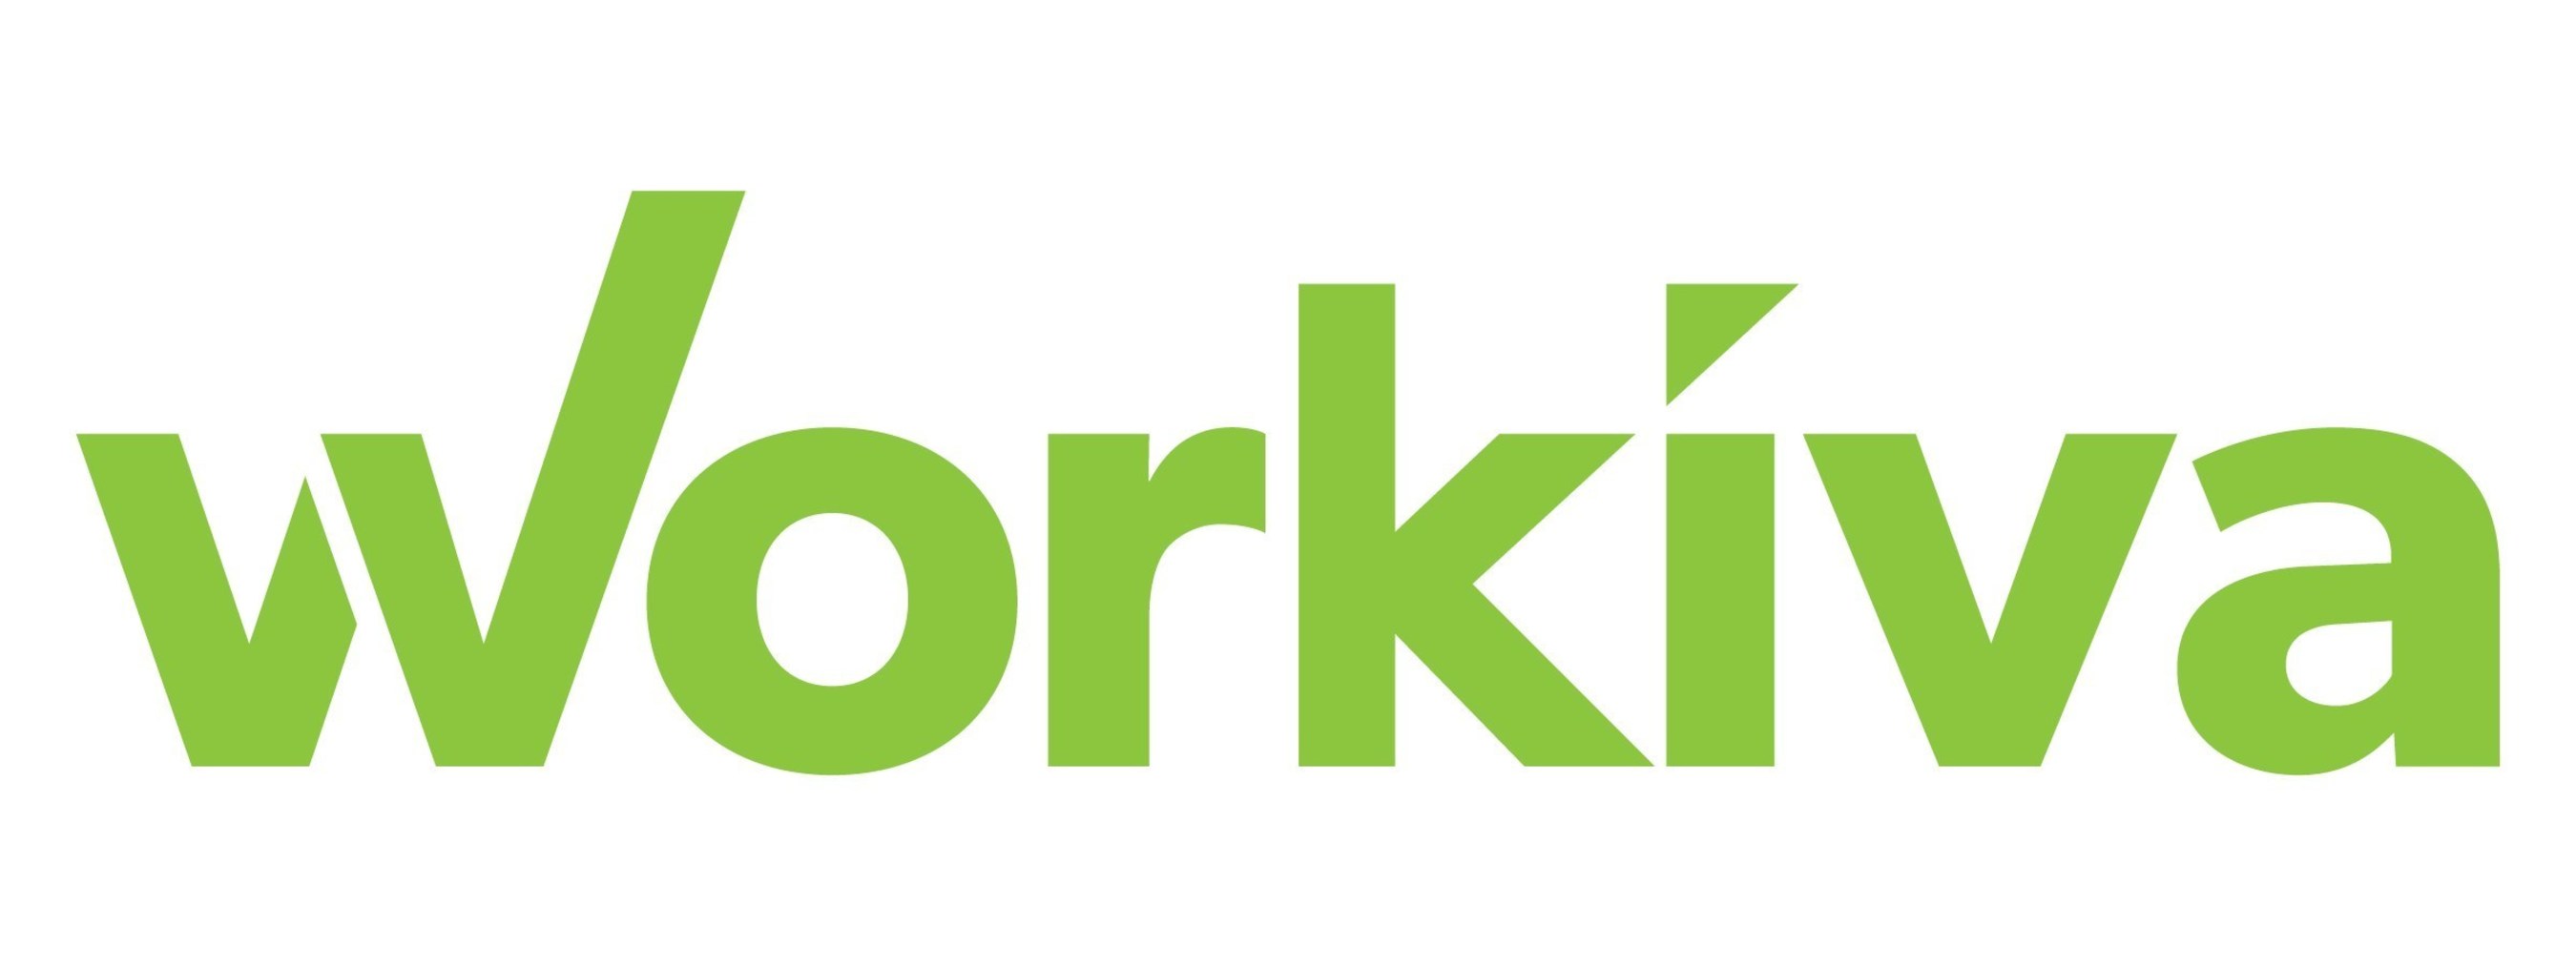 Workiva logo (PRNewsFoto/Workiva Inc.)